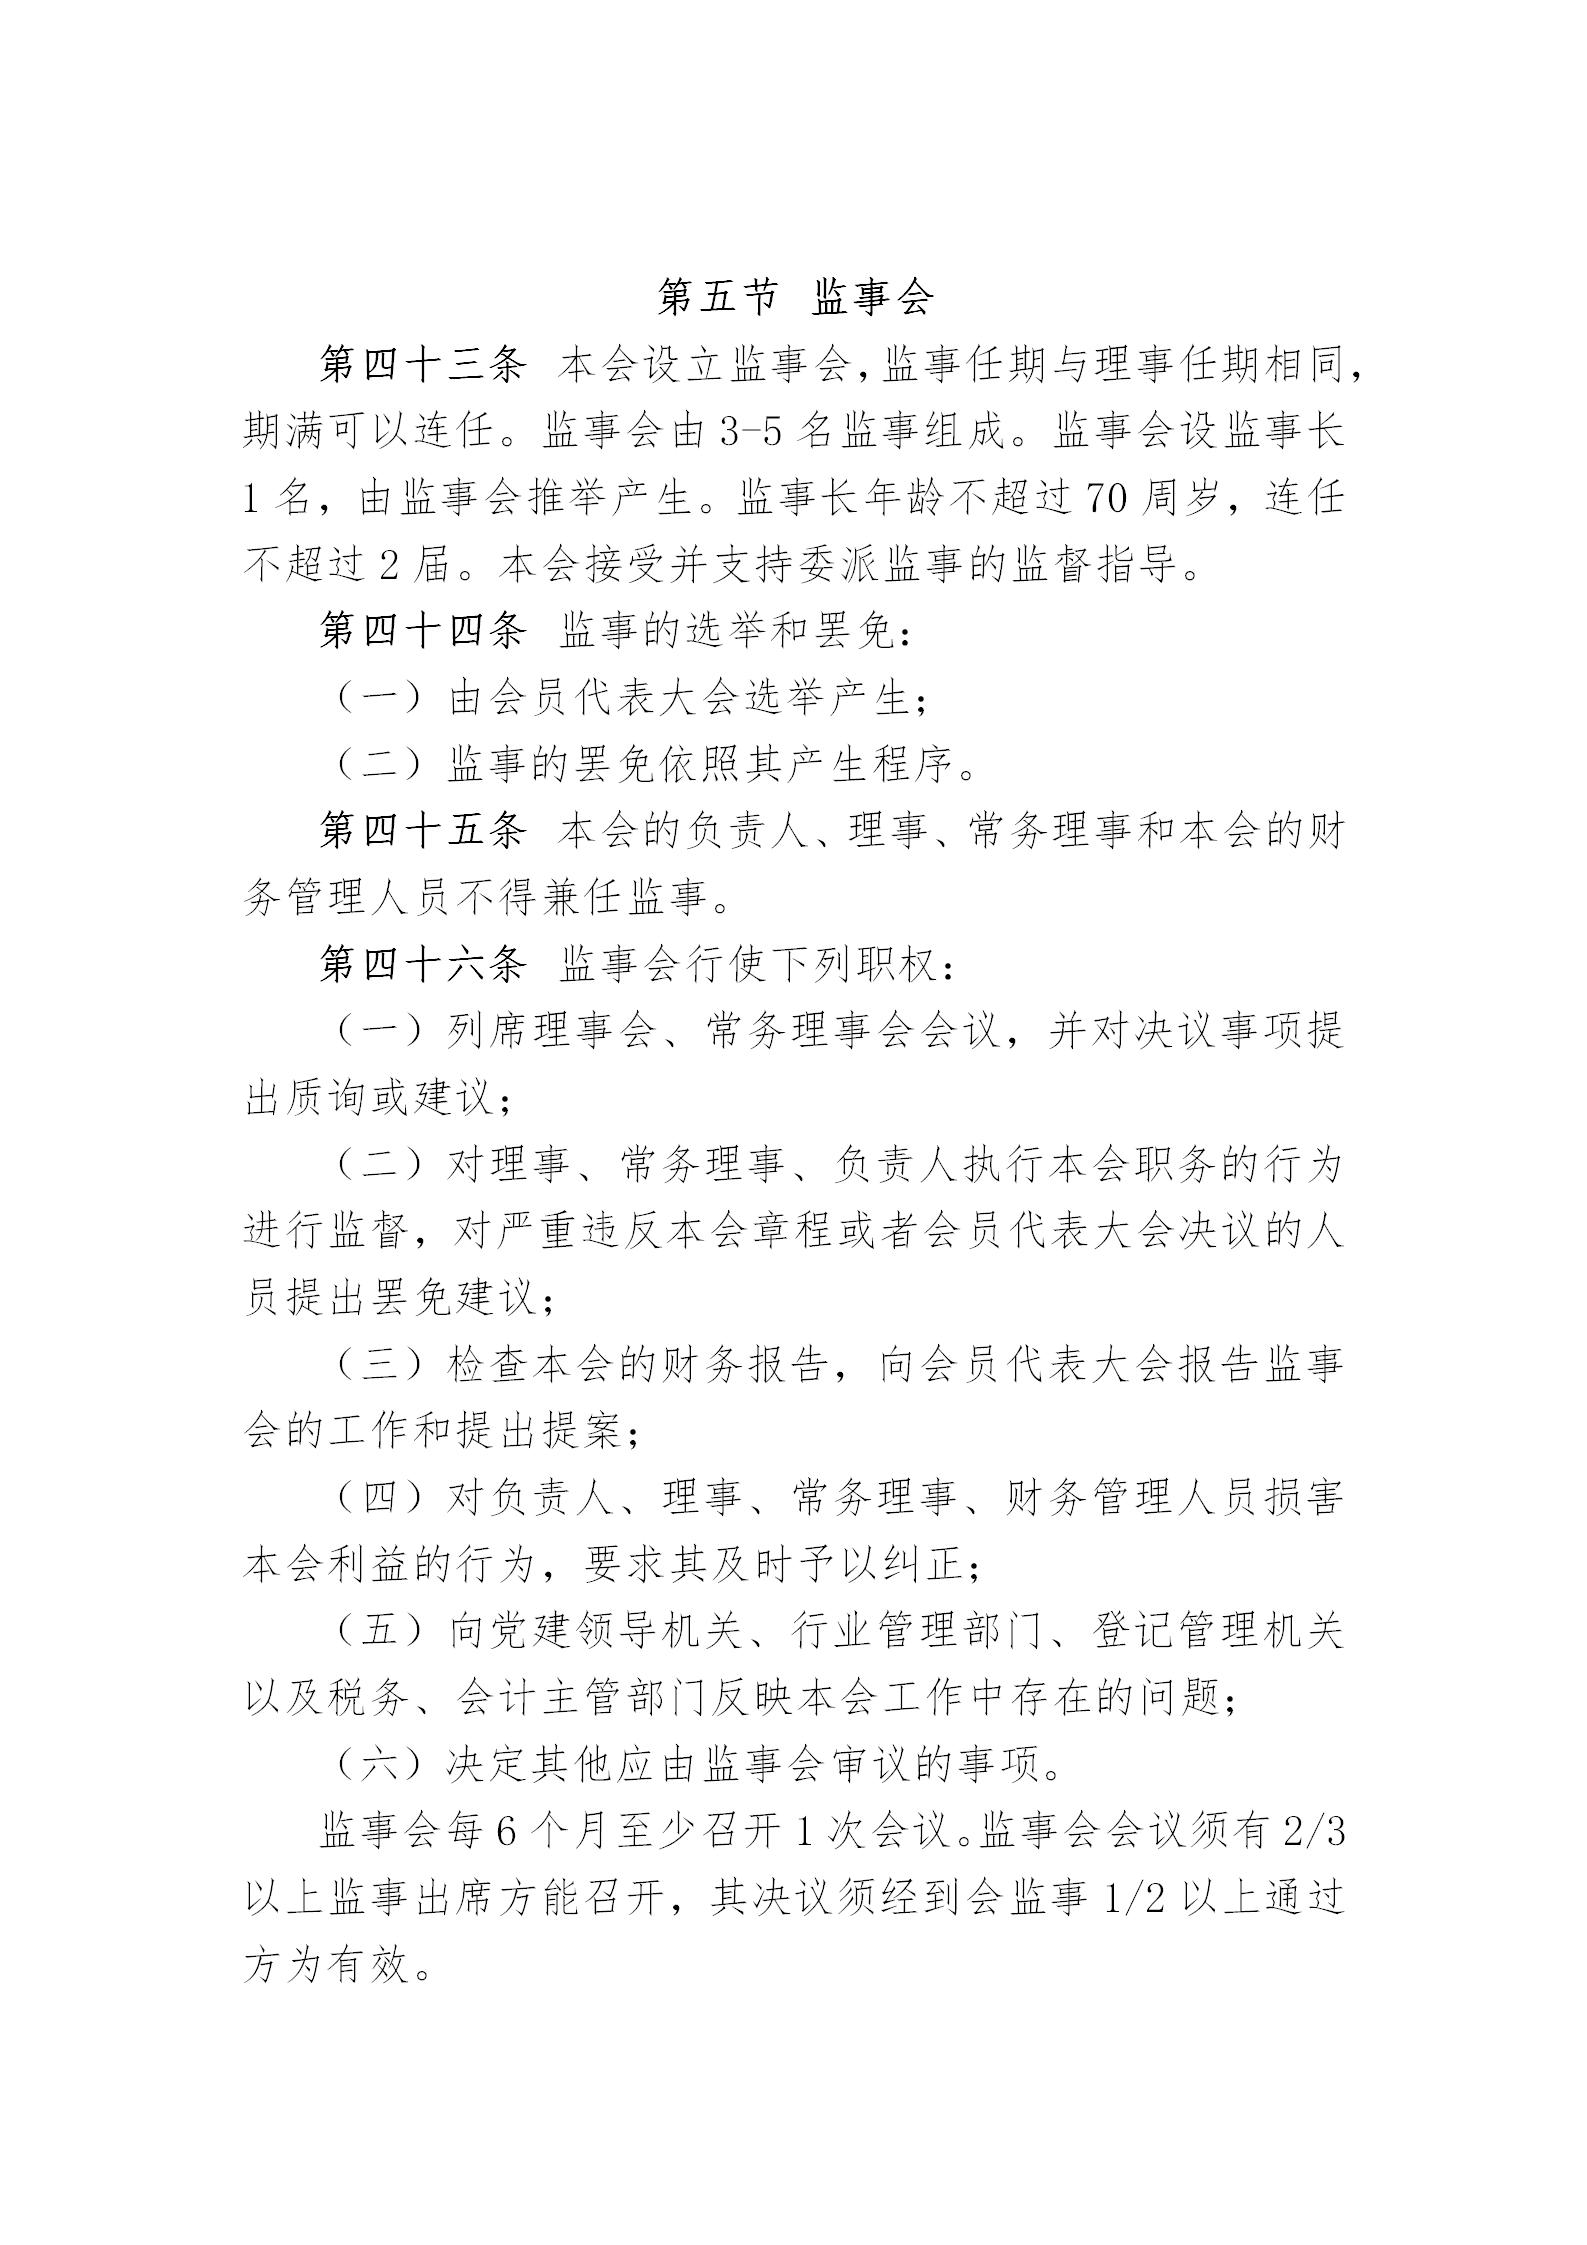 中国演艺设备技术协会章程(定稿)_13.jpg